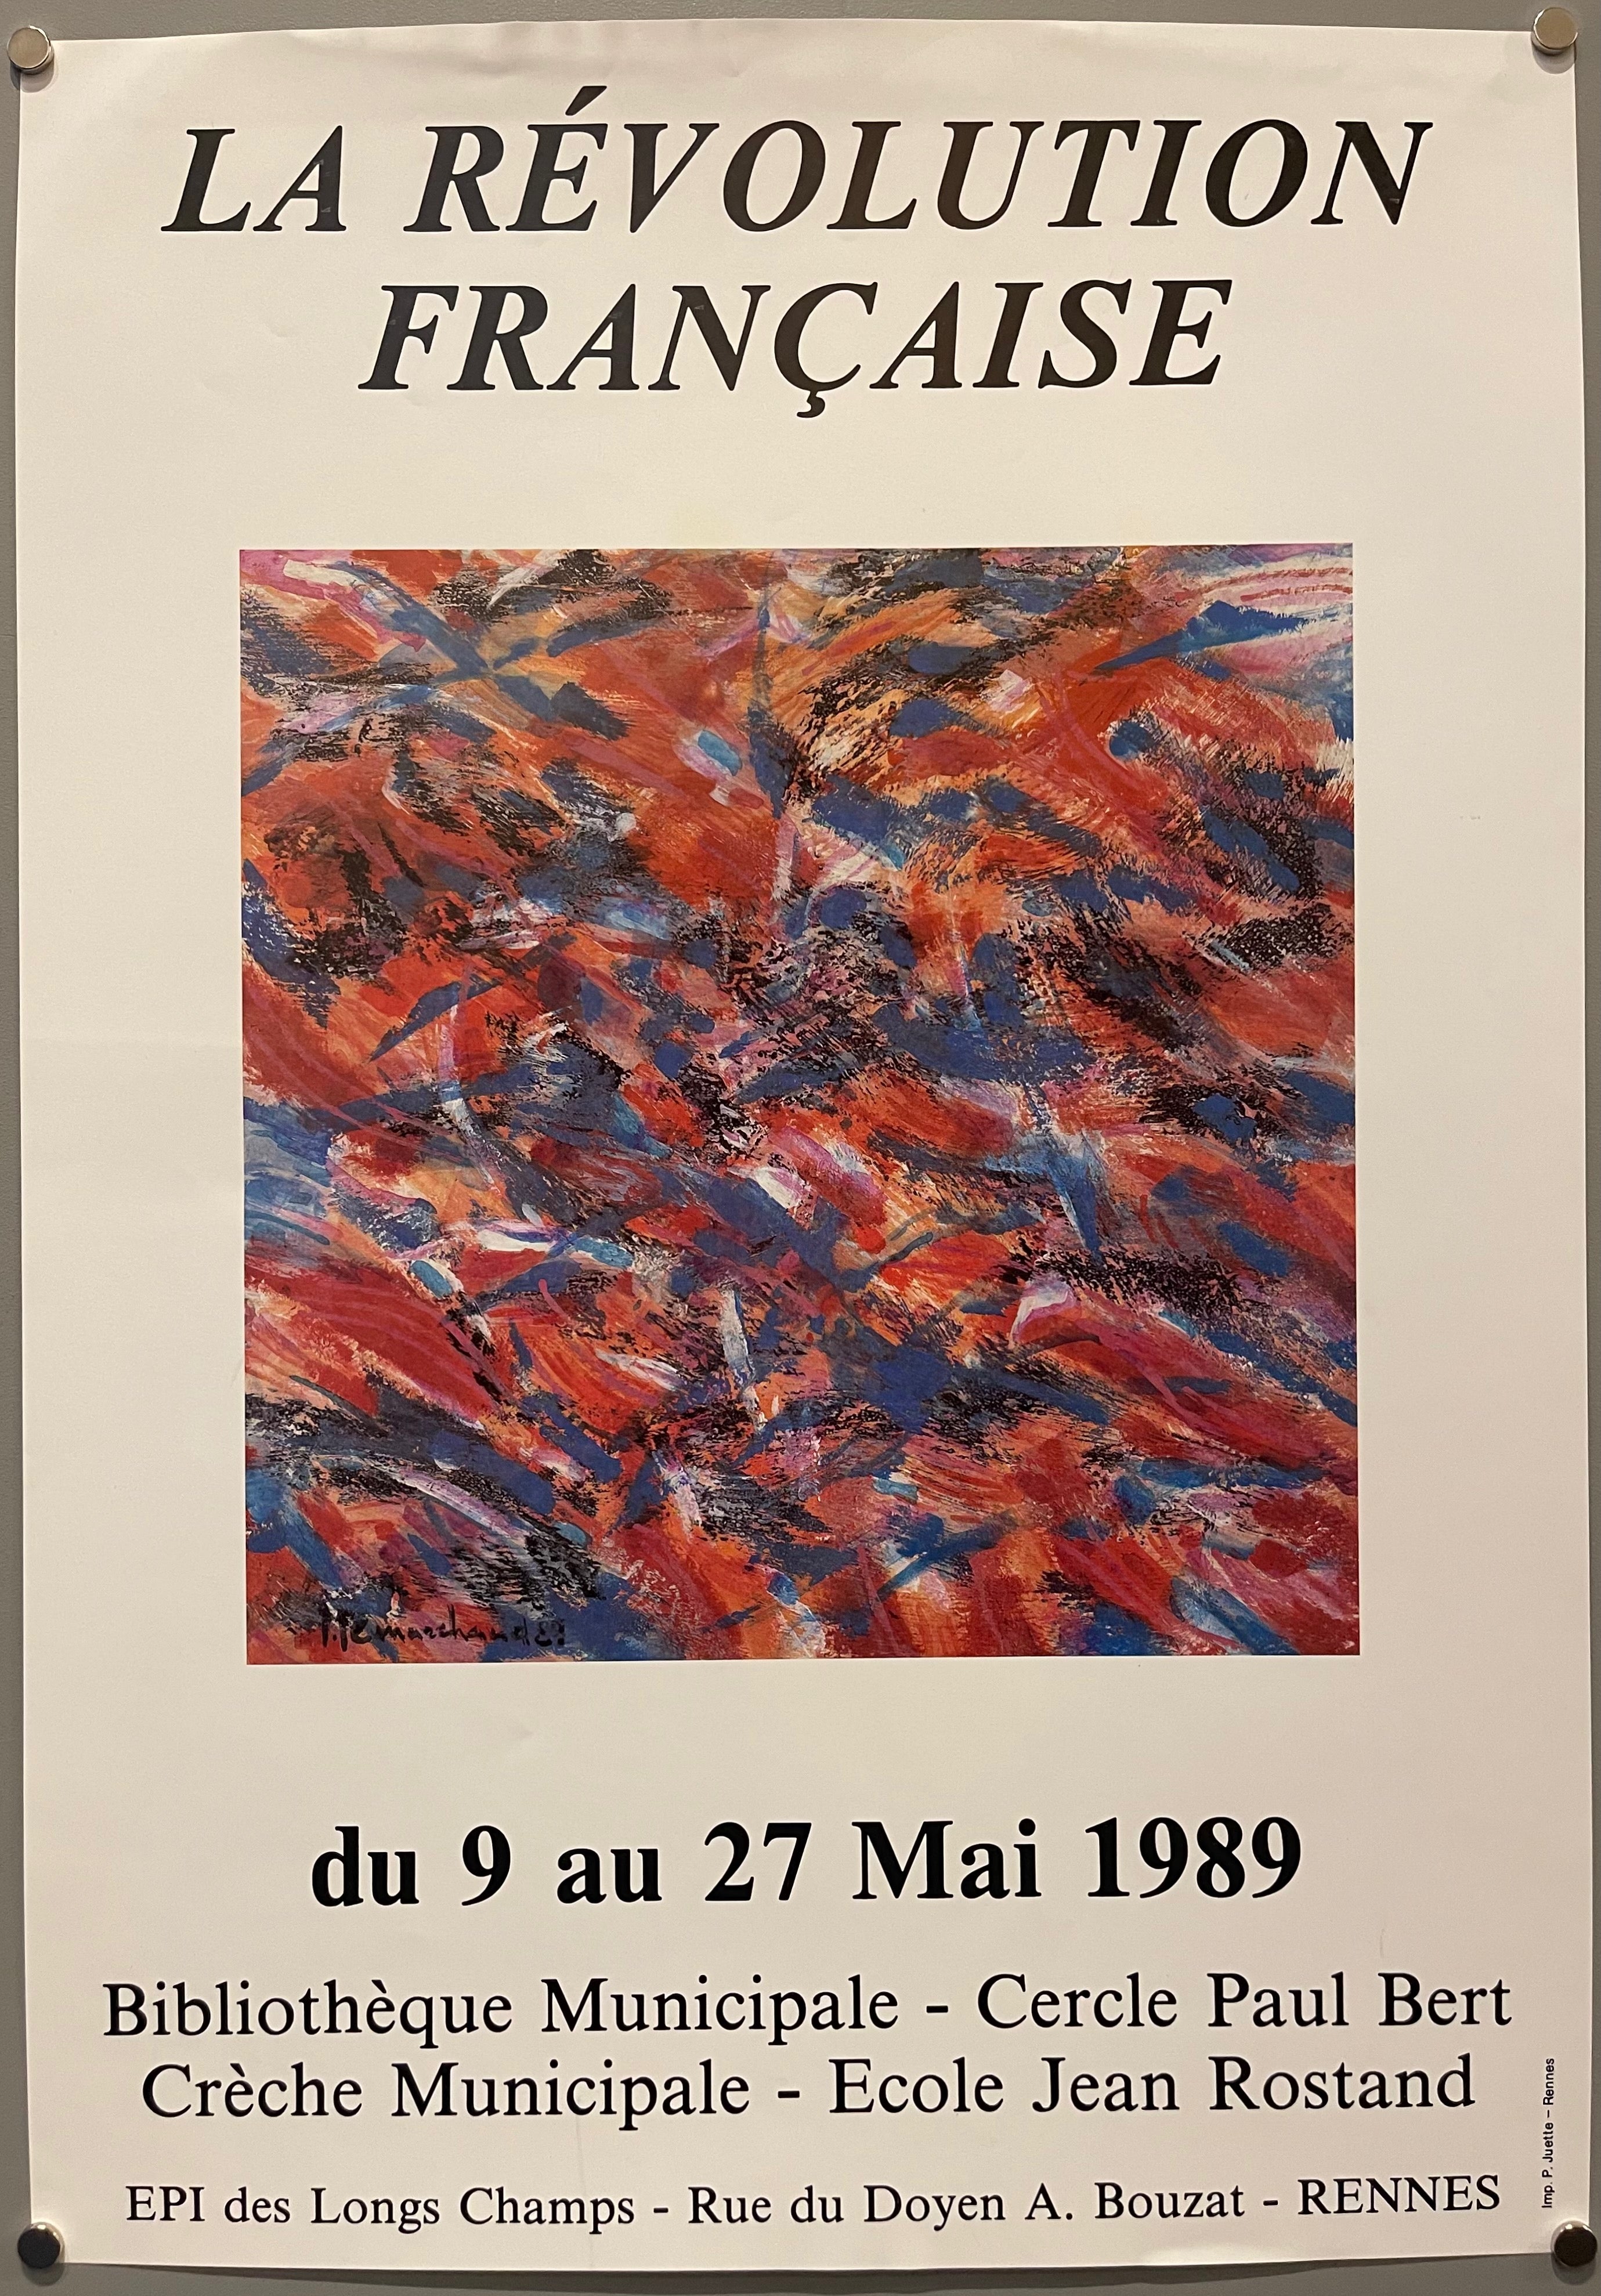 La Révolution Française Poster